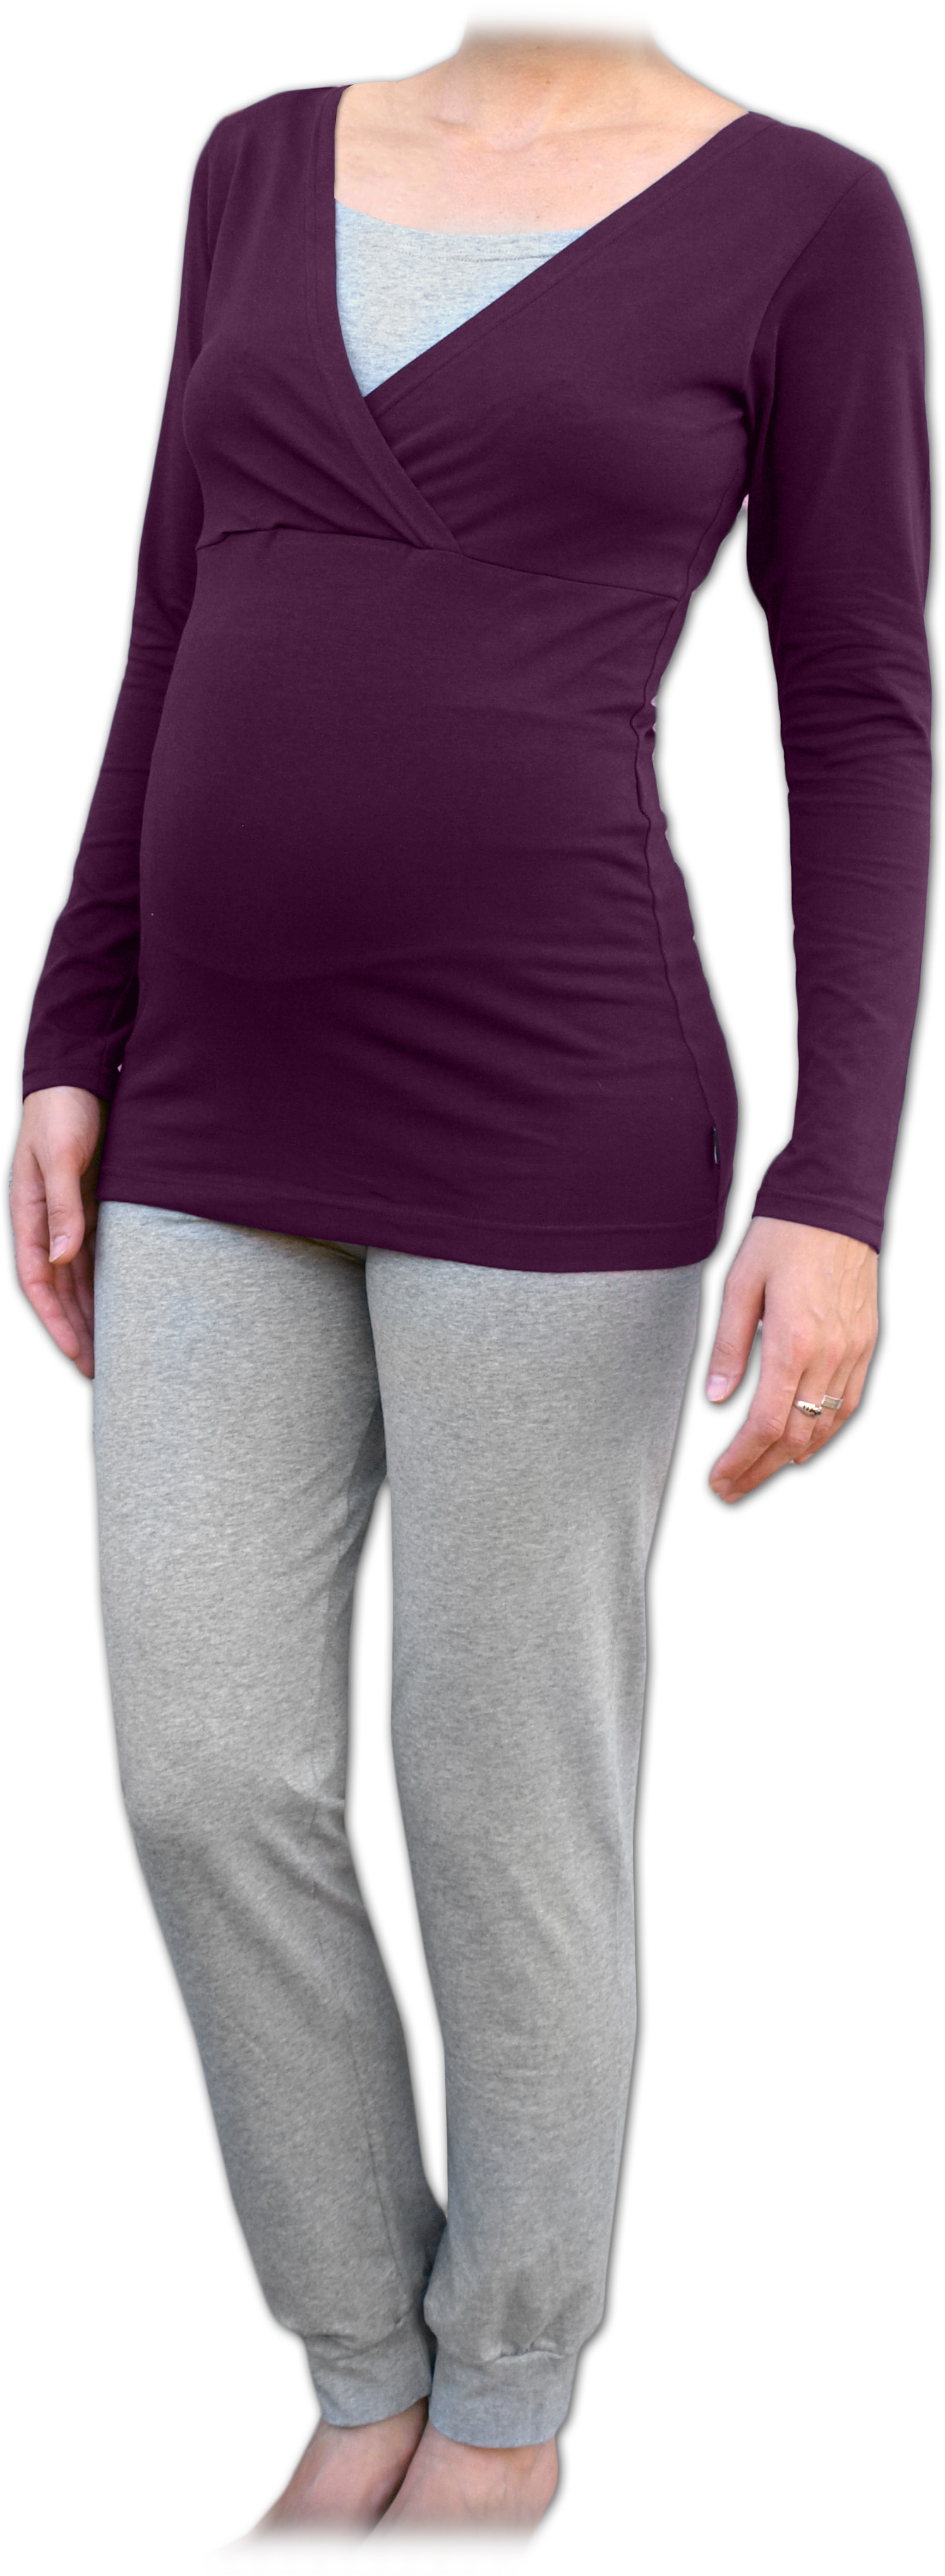 Tehotenské a dojčiace pyžamo, dlhé, slivkovo fialové + sivý melír